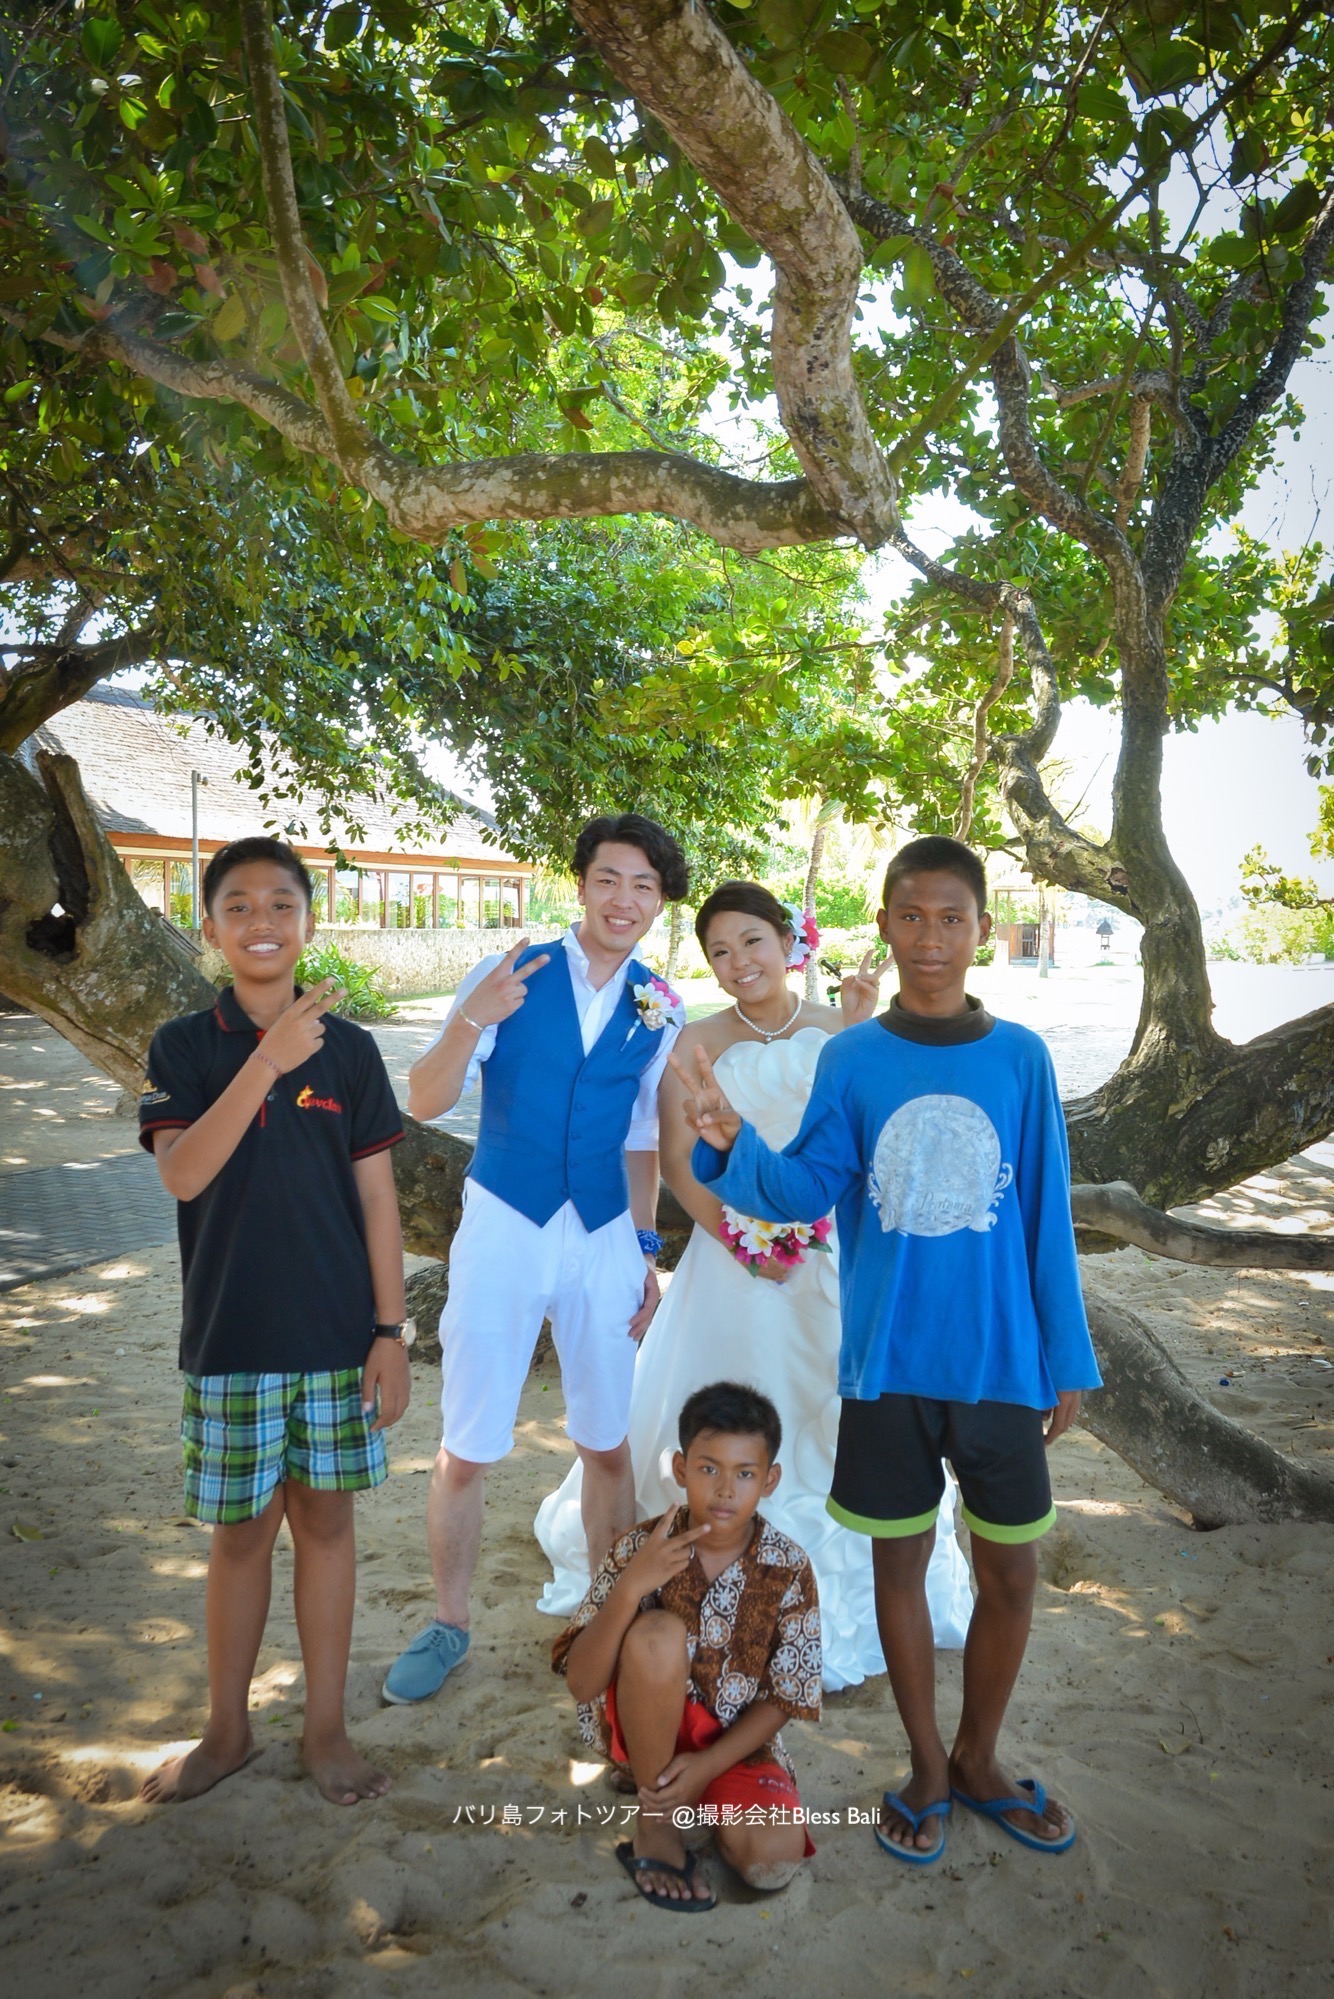 ビーチで遊ぶ地元の子供たちと撮影